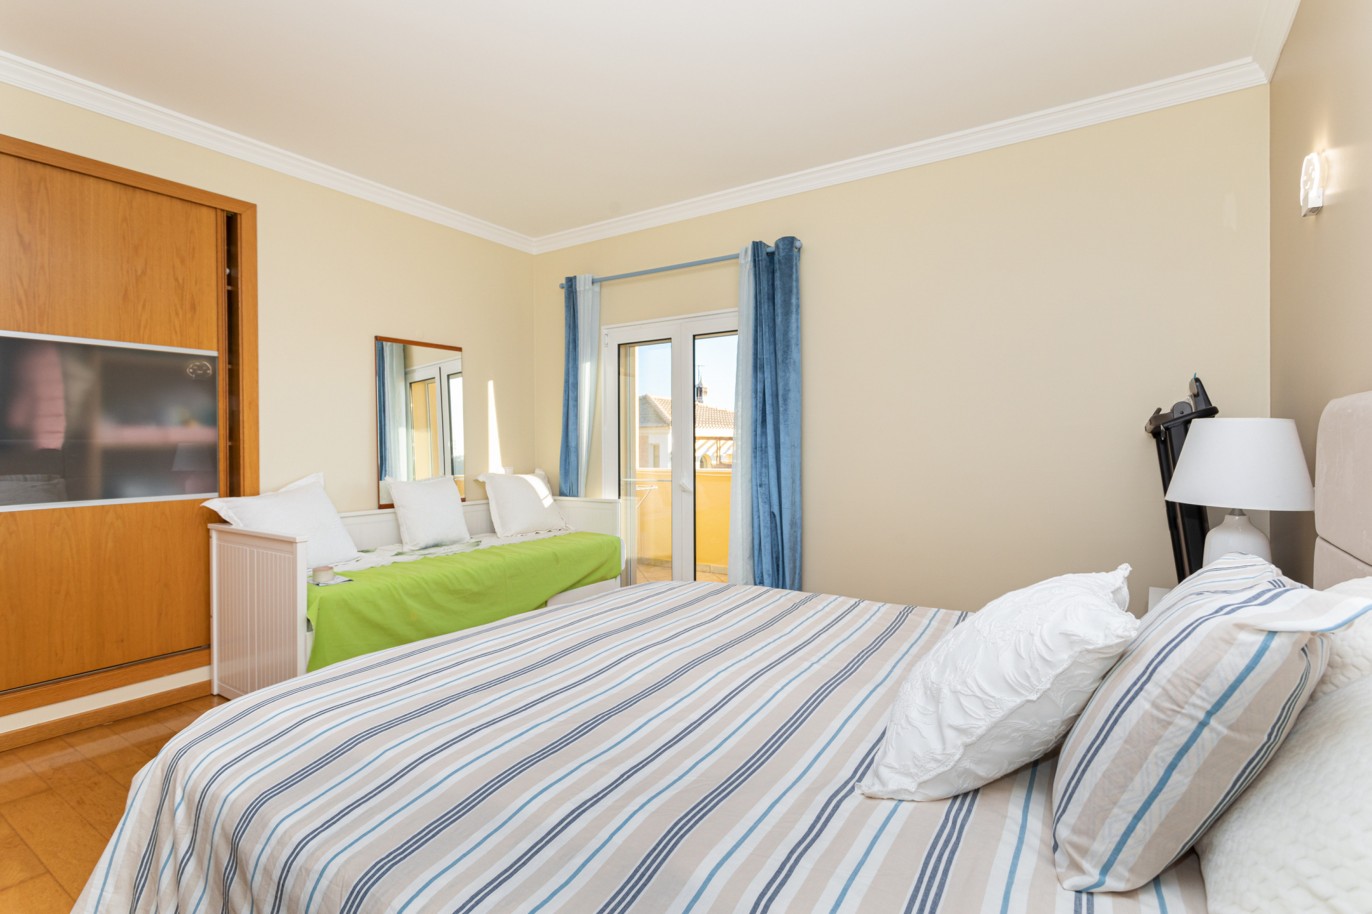 Villa de 4 dormitorios en zona de prestigio, en venta en Almancil, Algarve_217665